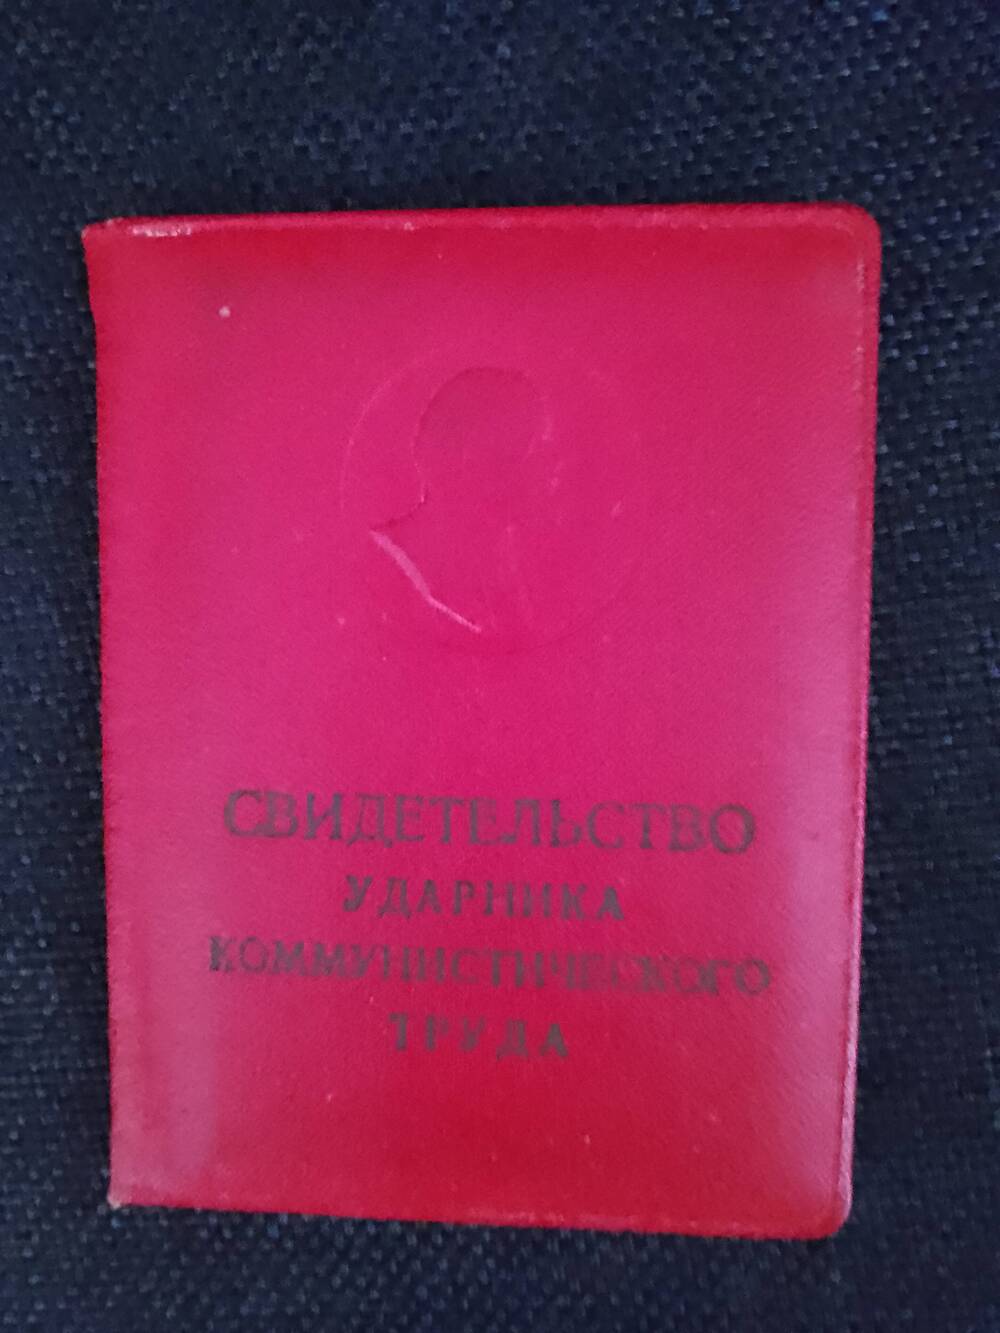 Свидетельство ударника коммунистического труда 1968 г. на имя Воваса Н. П.